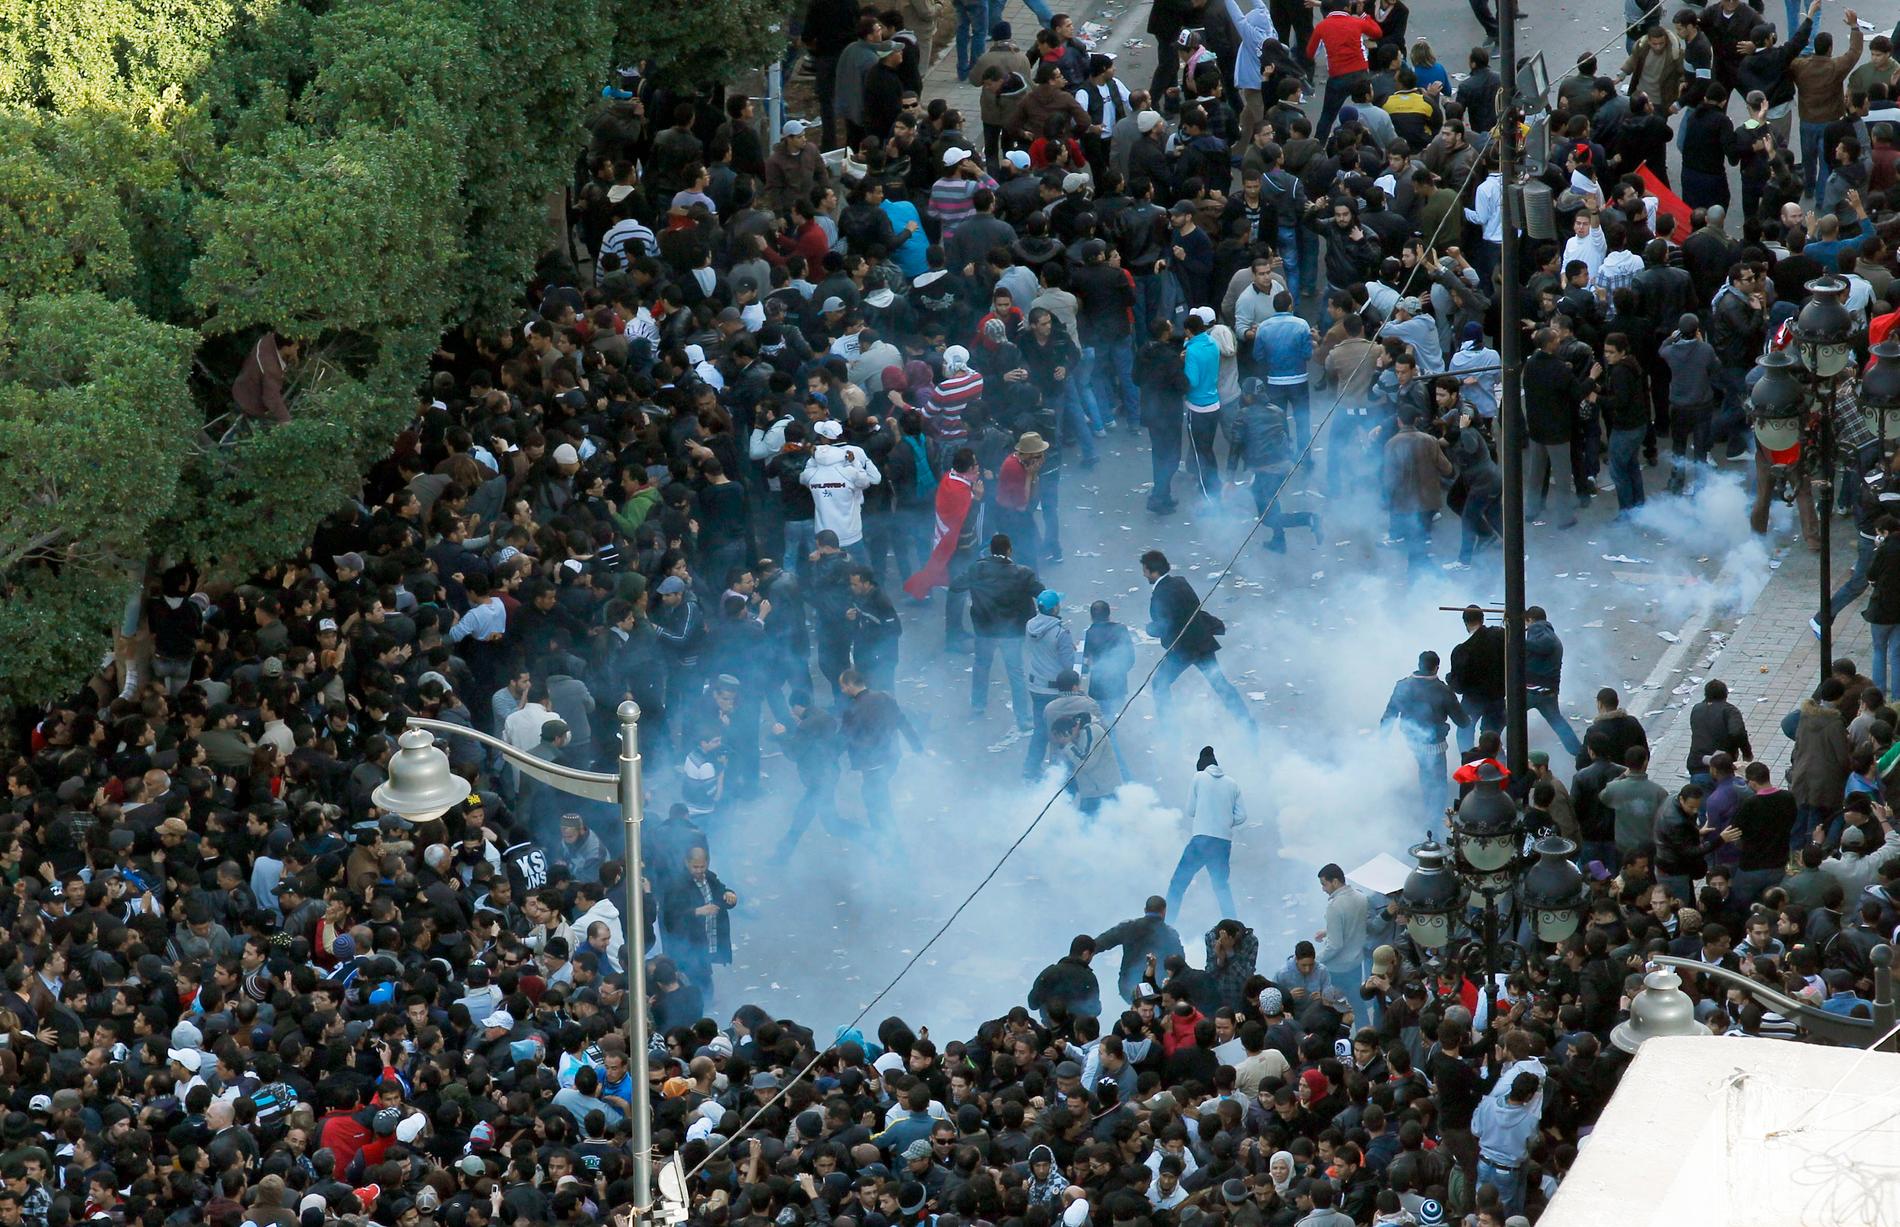 Jasminrevolutionen Polis ingriper mot demonstranter i Tunis, januari 2011.